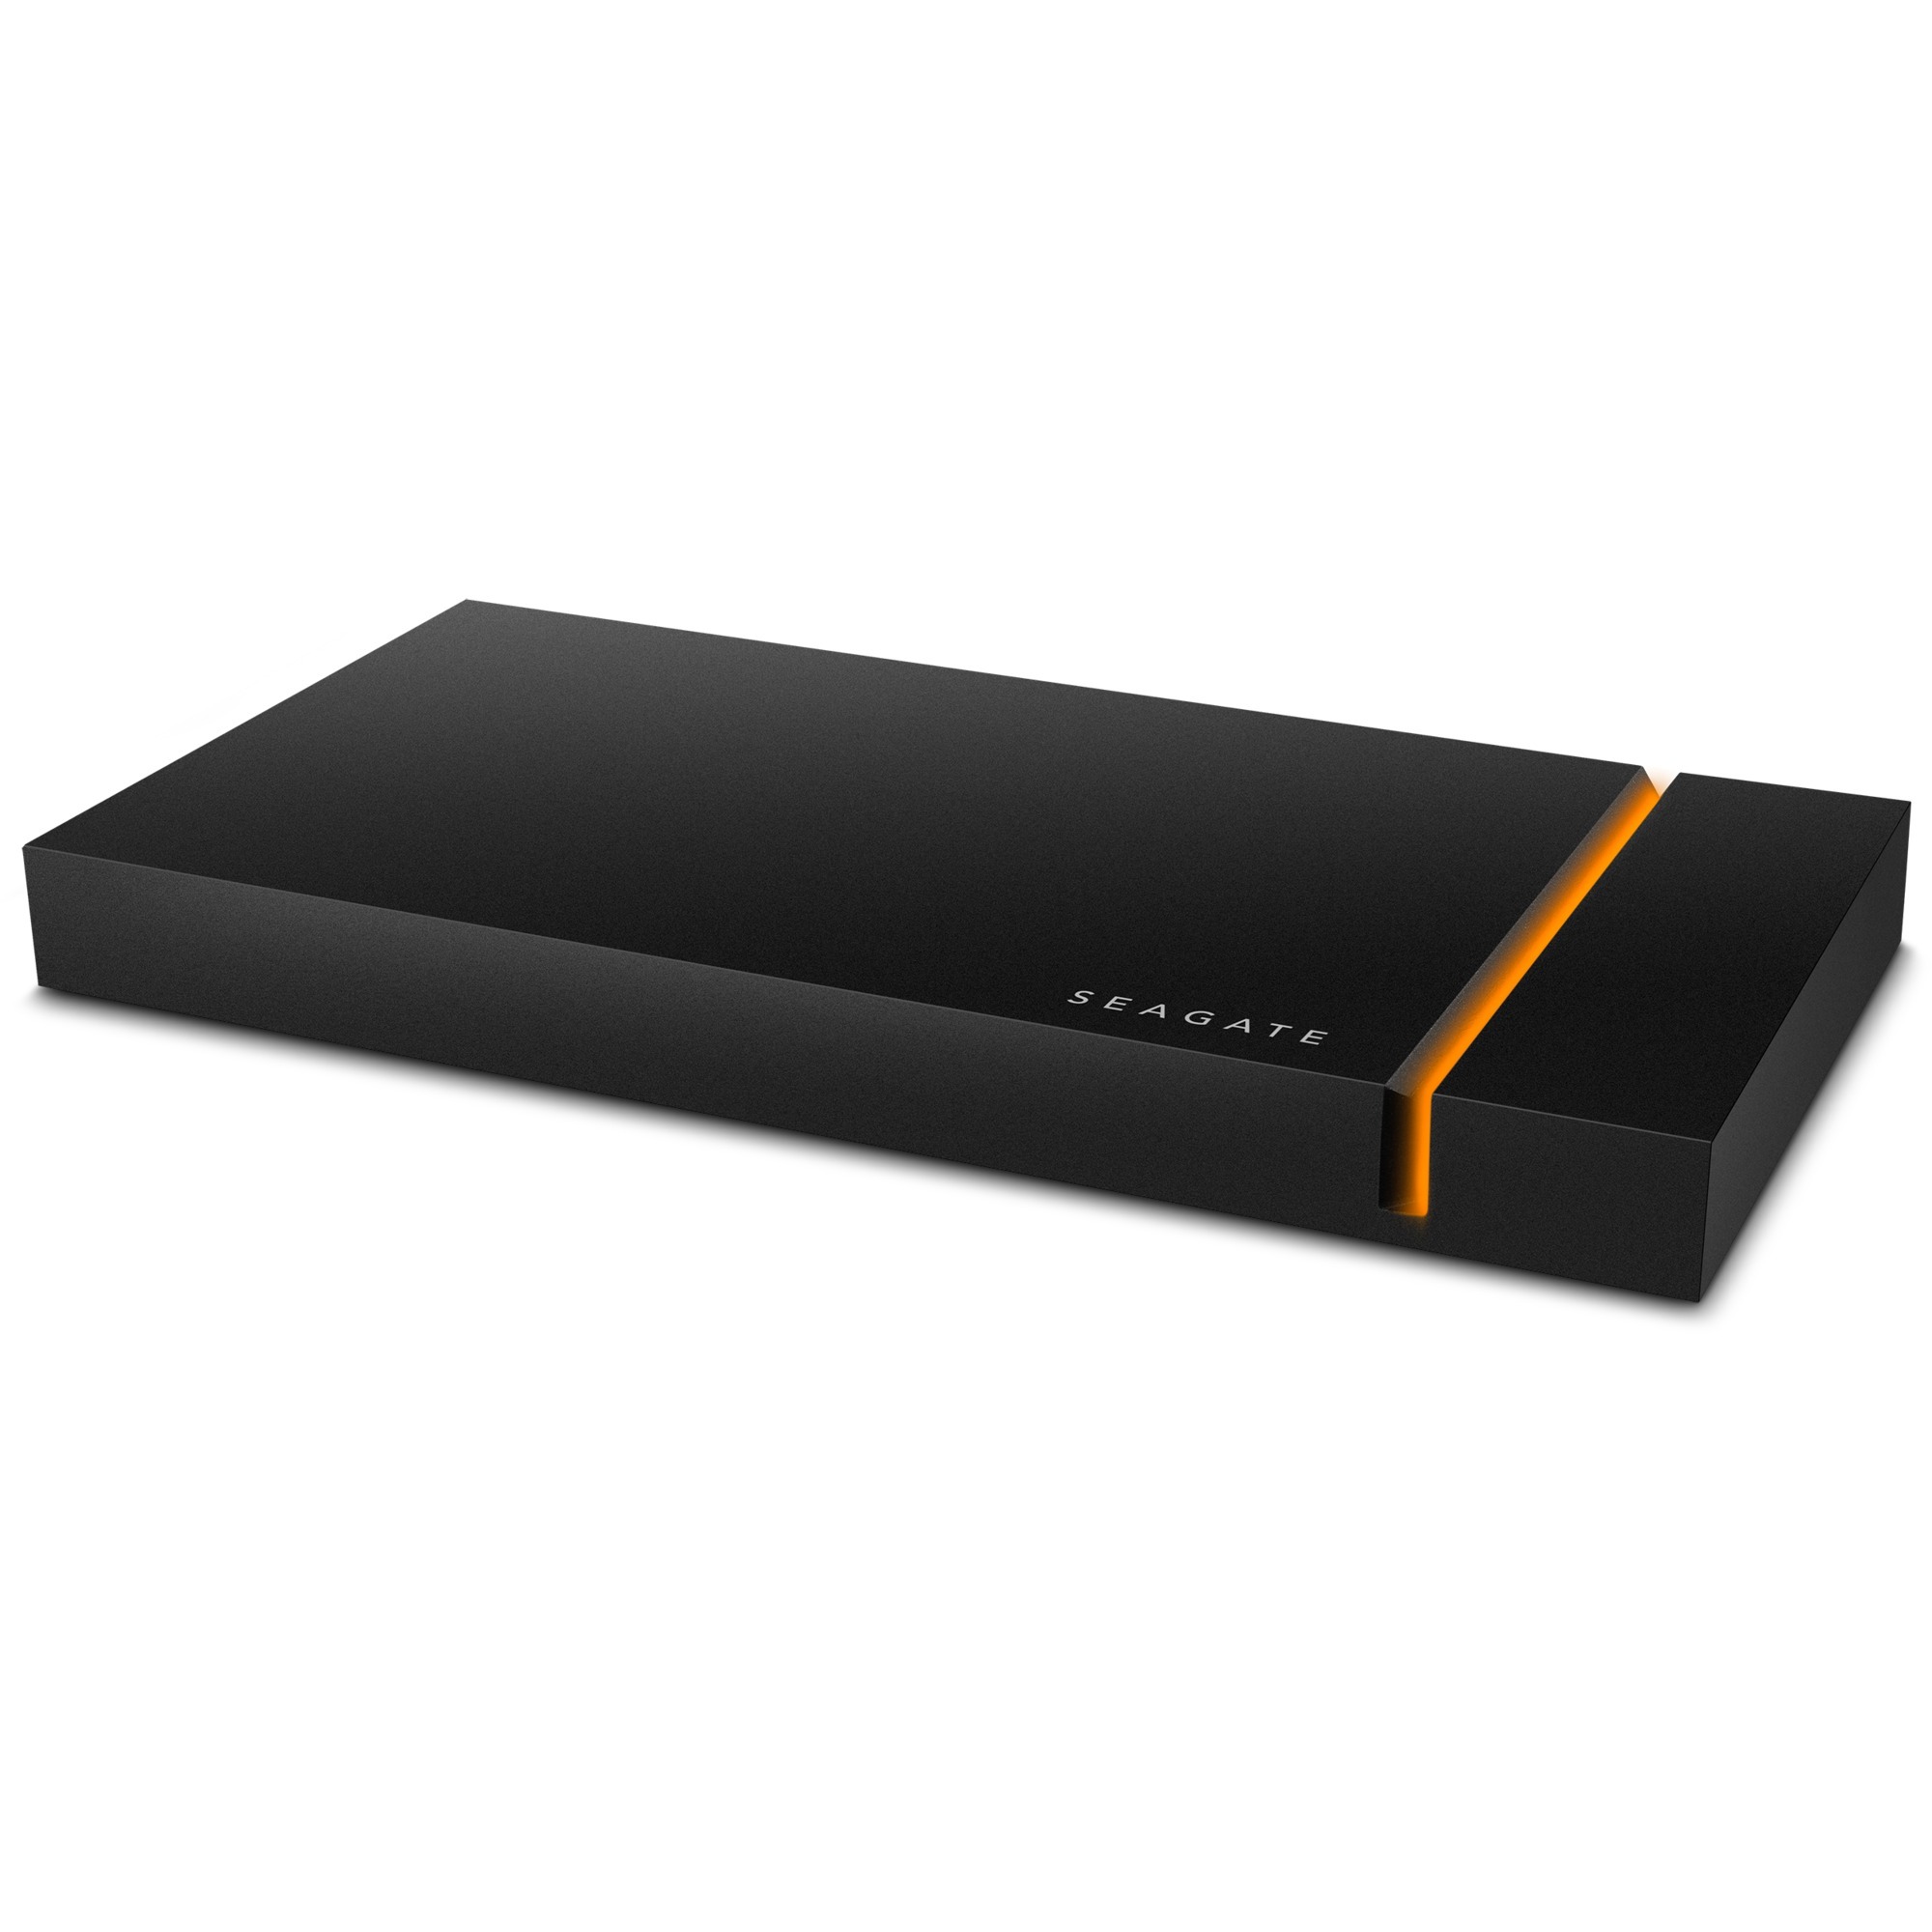 Image of Alternate - FireCuda Gaming SSD 2 TB, Externe SSD online einkaufen bei Alternate